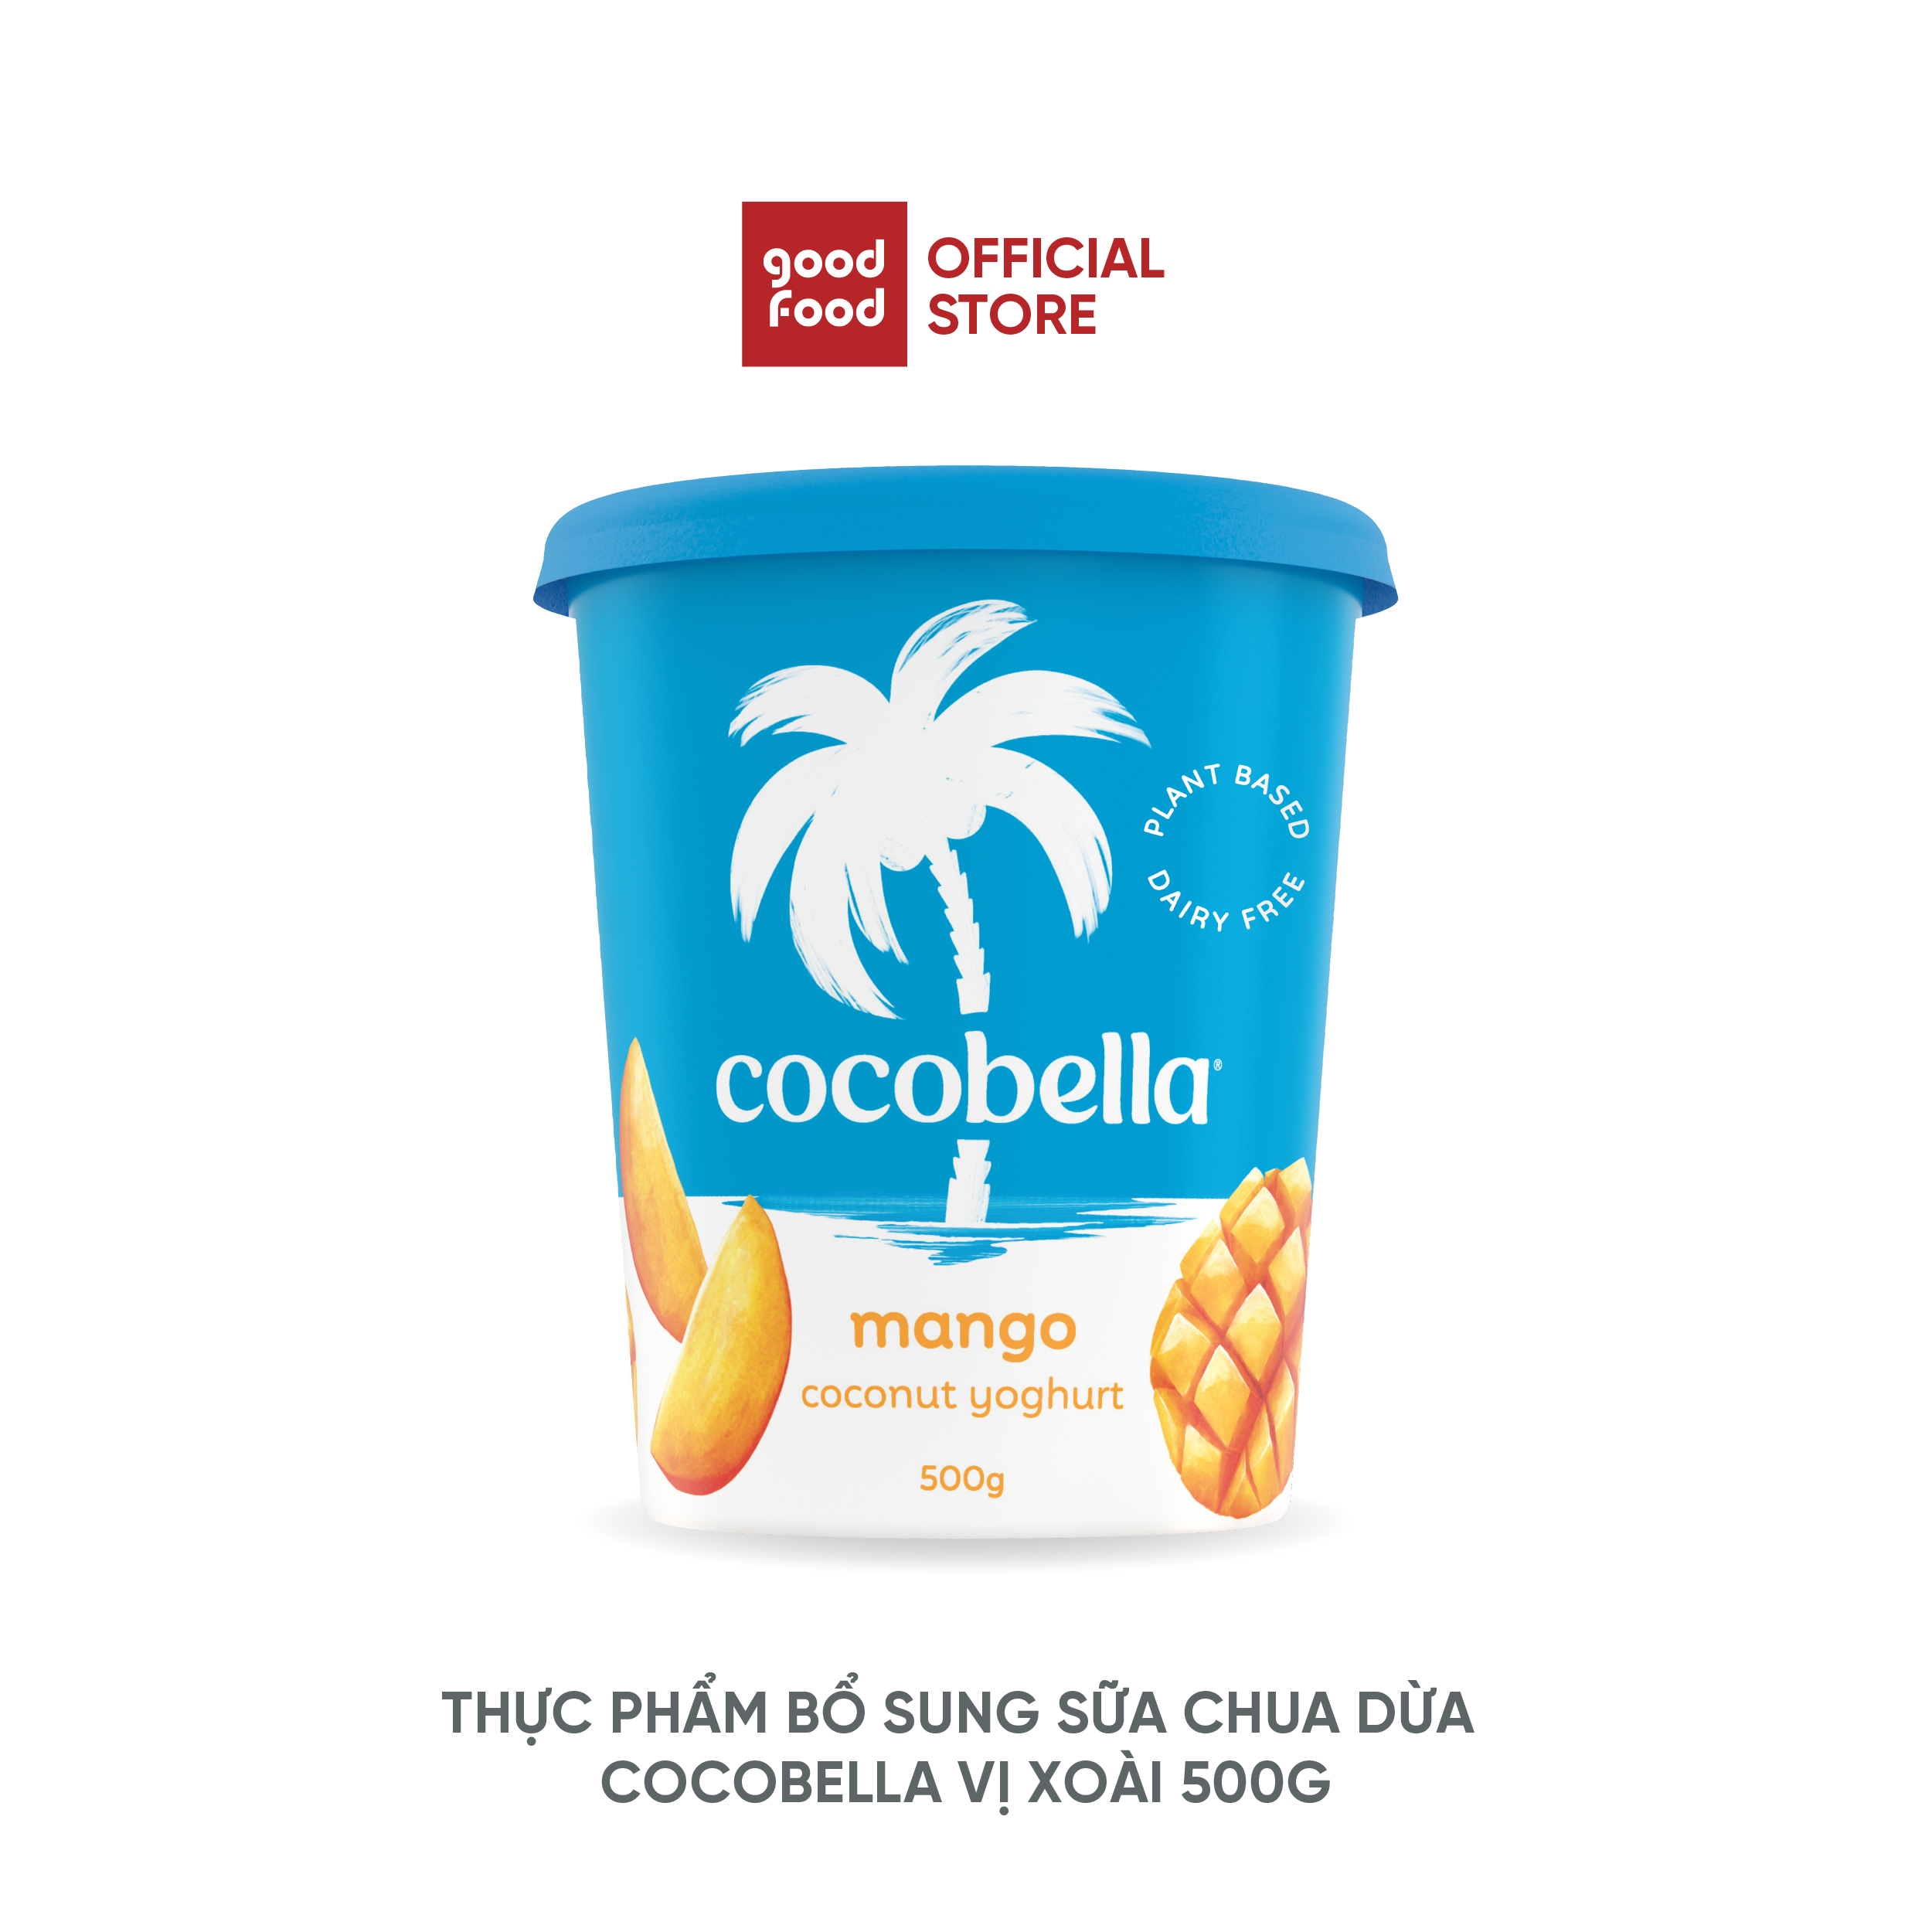 Thực Phẩm Bổ Sung Sữa Chua Dừa Cocobella vi xoài 500G - 1 hũ